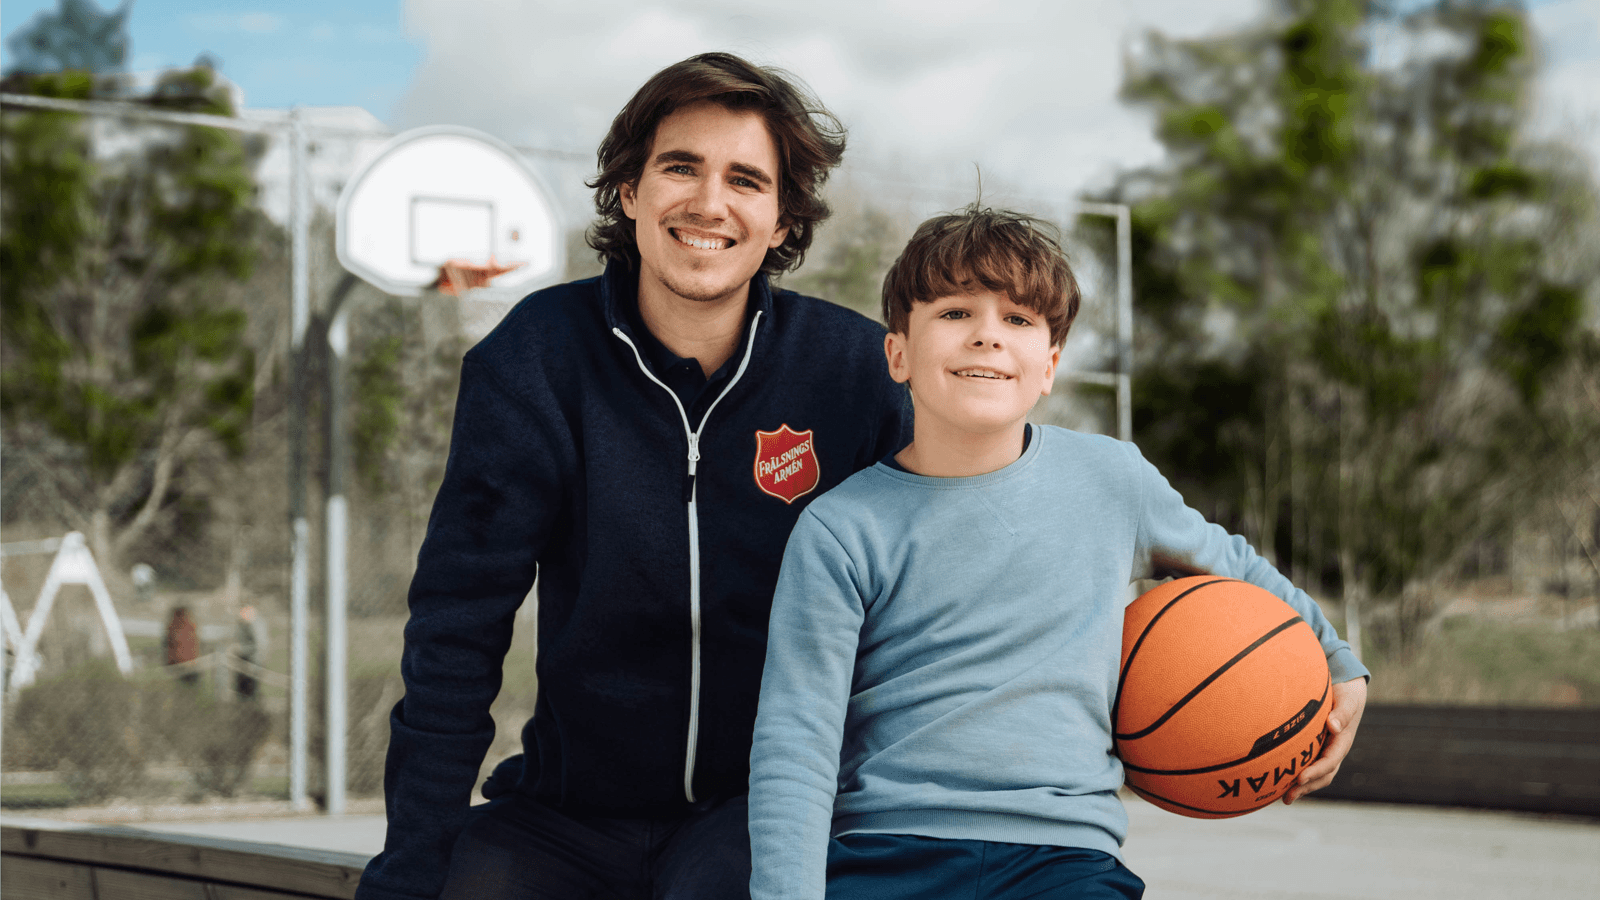 En pojke med en basketboll tillsammans med en av Frälsningsarméns personal.